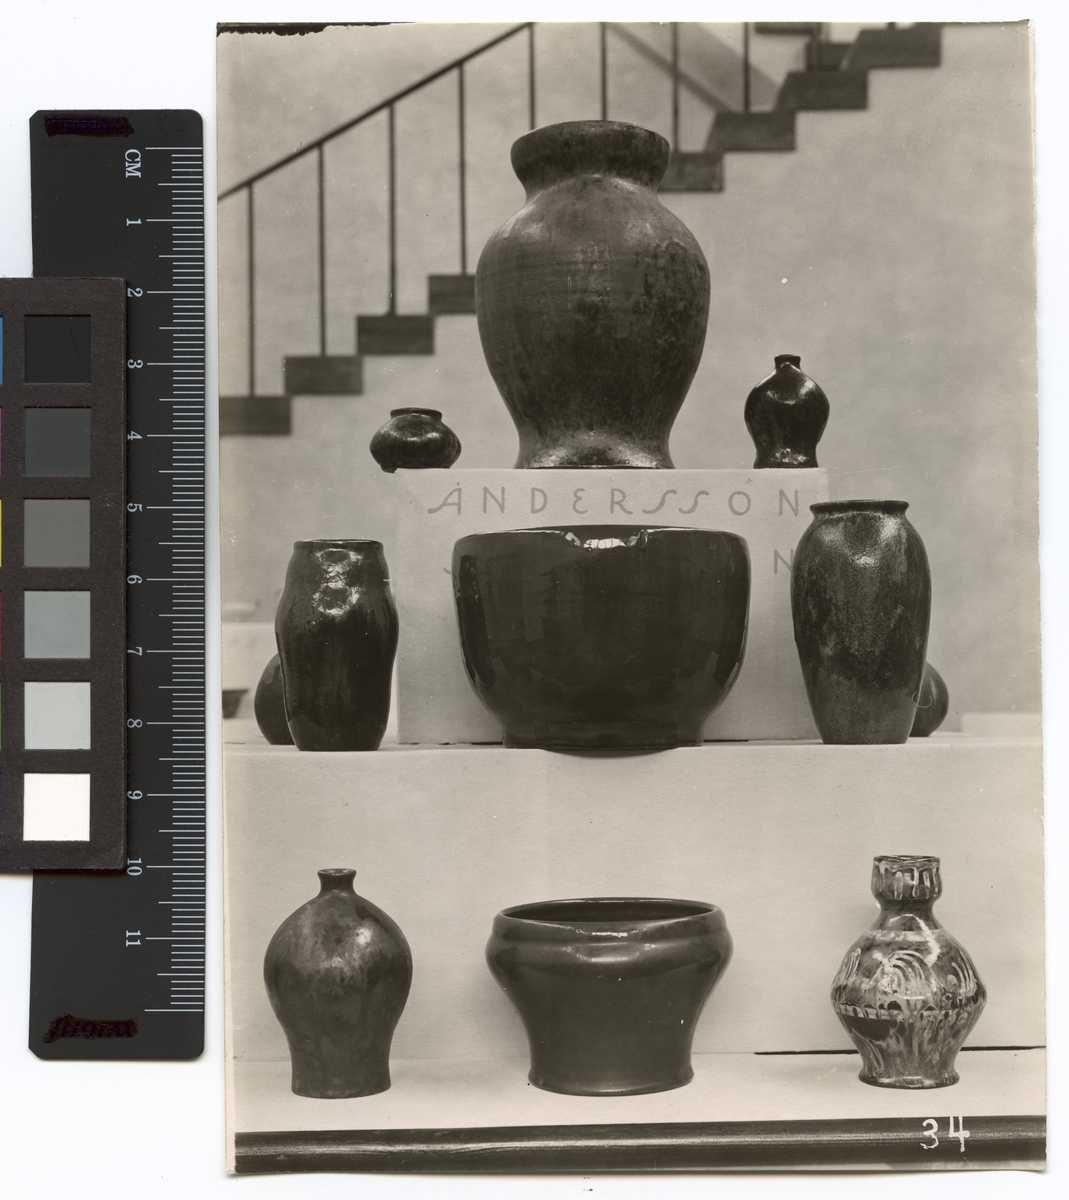 Göteborgs Jubileum (Minnesutställningen), 1923
Utställningsföremål: lergods,  vaser, skålar